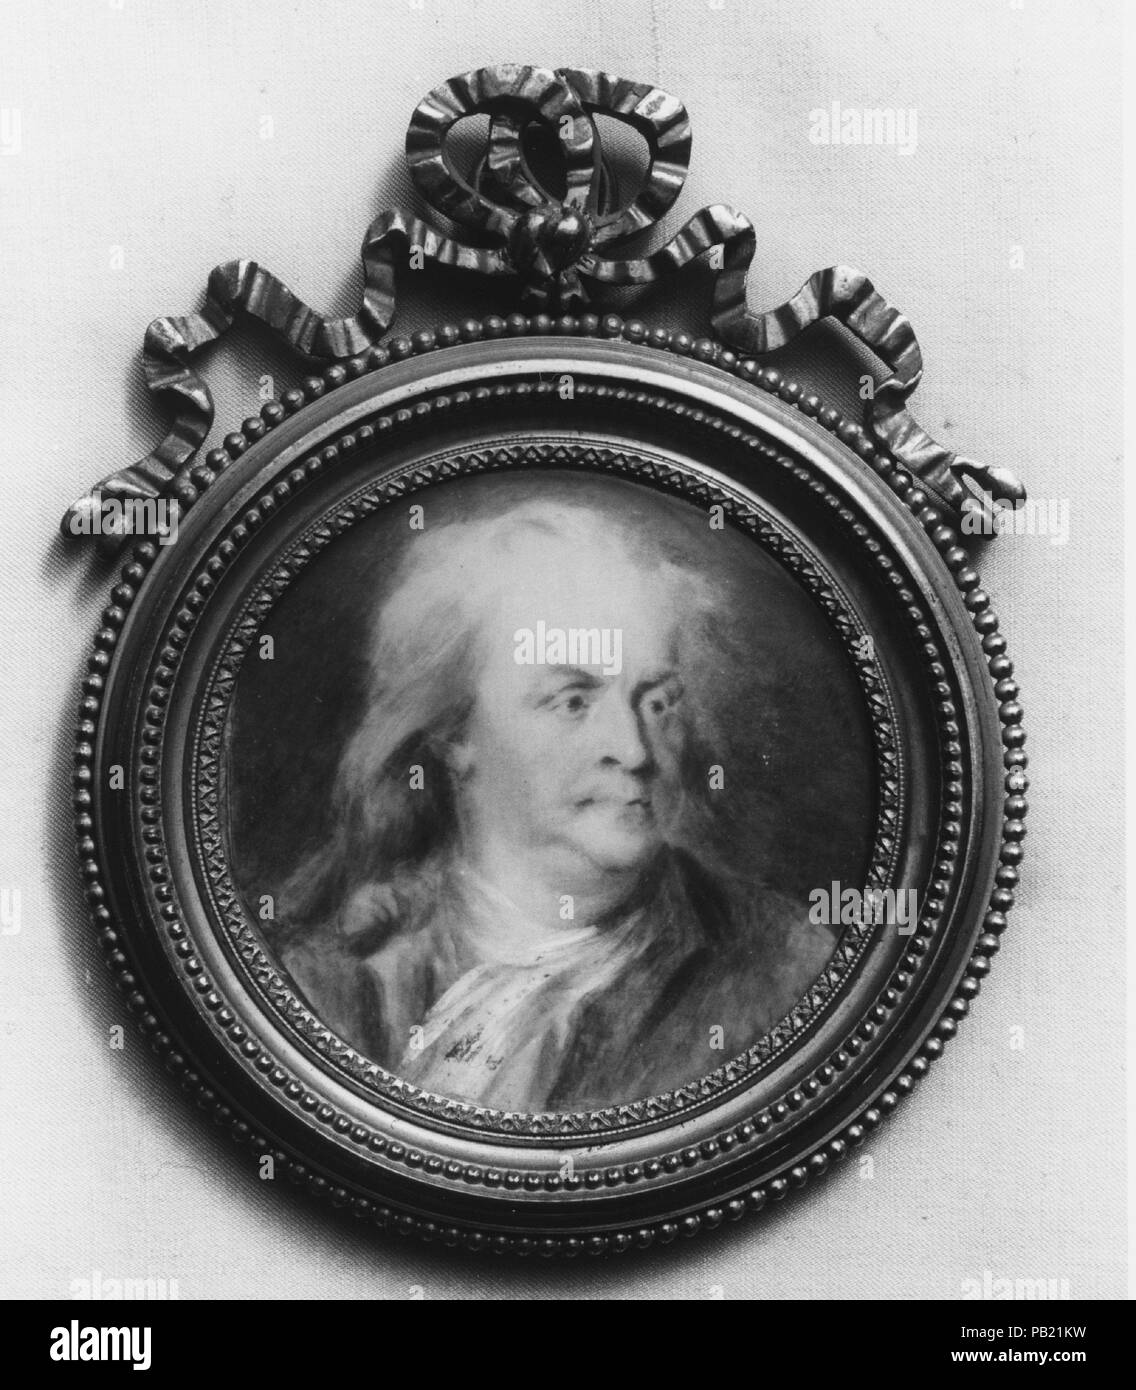 Portrait de la plaque de Benjamin Franklin. Artiste : Jacques Thouron après. Dimensions : diam. 3 3/16 in. (8,1 cm). Date : 1776-1883. Musée : Metropolitan Museum of Art, New York, USA. Banque D'Images